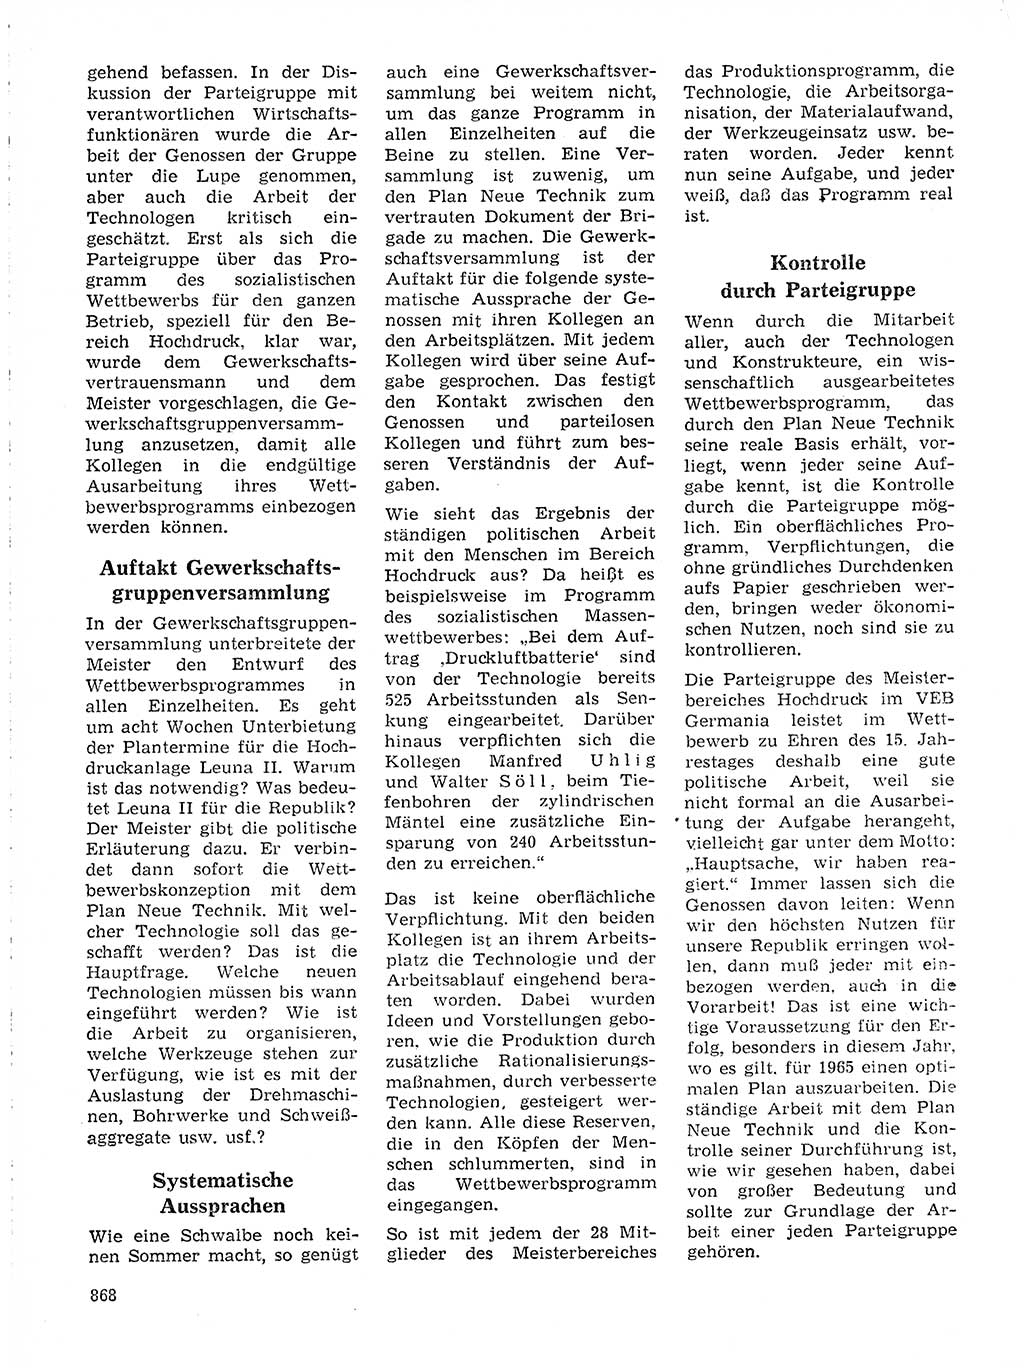 Neuer Weg (NW), Organ des Zentralkomitees (ZK) der SED (Sozialistische Einheitspartei Deutschlands) für Fragen des Parteilebens, 19. Jahrgang [Deutsche Demokratische Republik (DDR)] 1964, Seite 868 (NW ZK SED DDR 1964, S. 868)